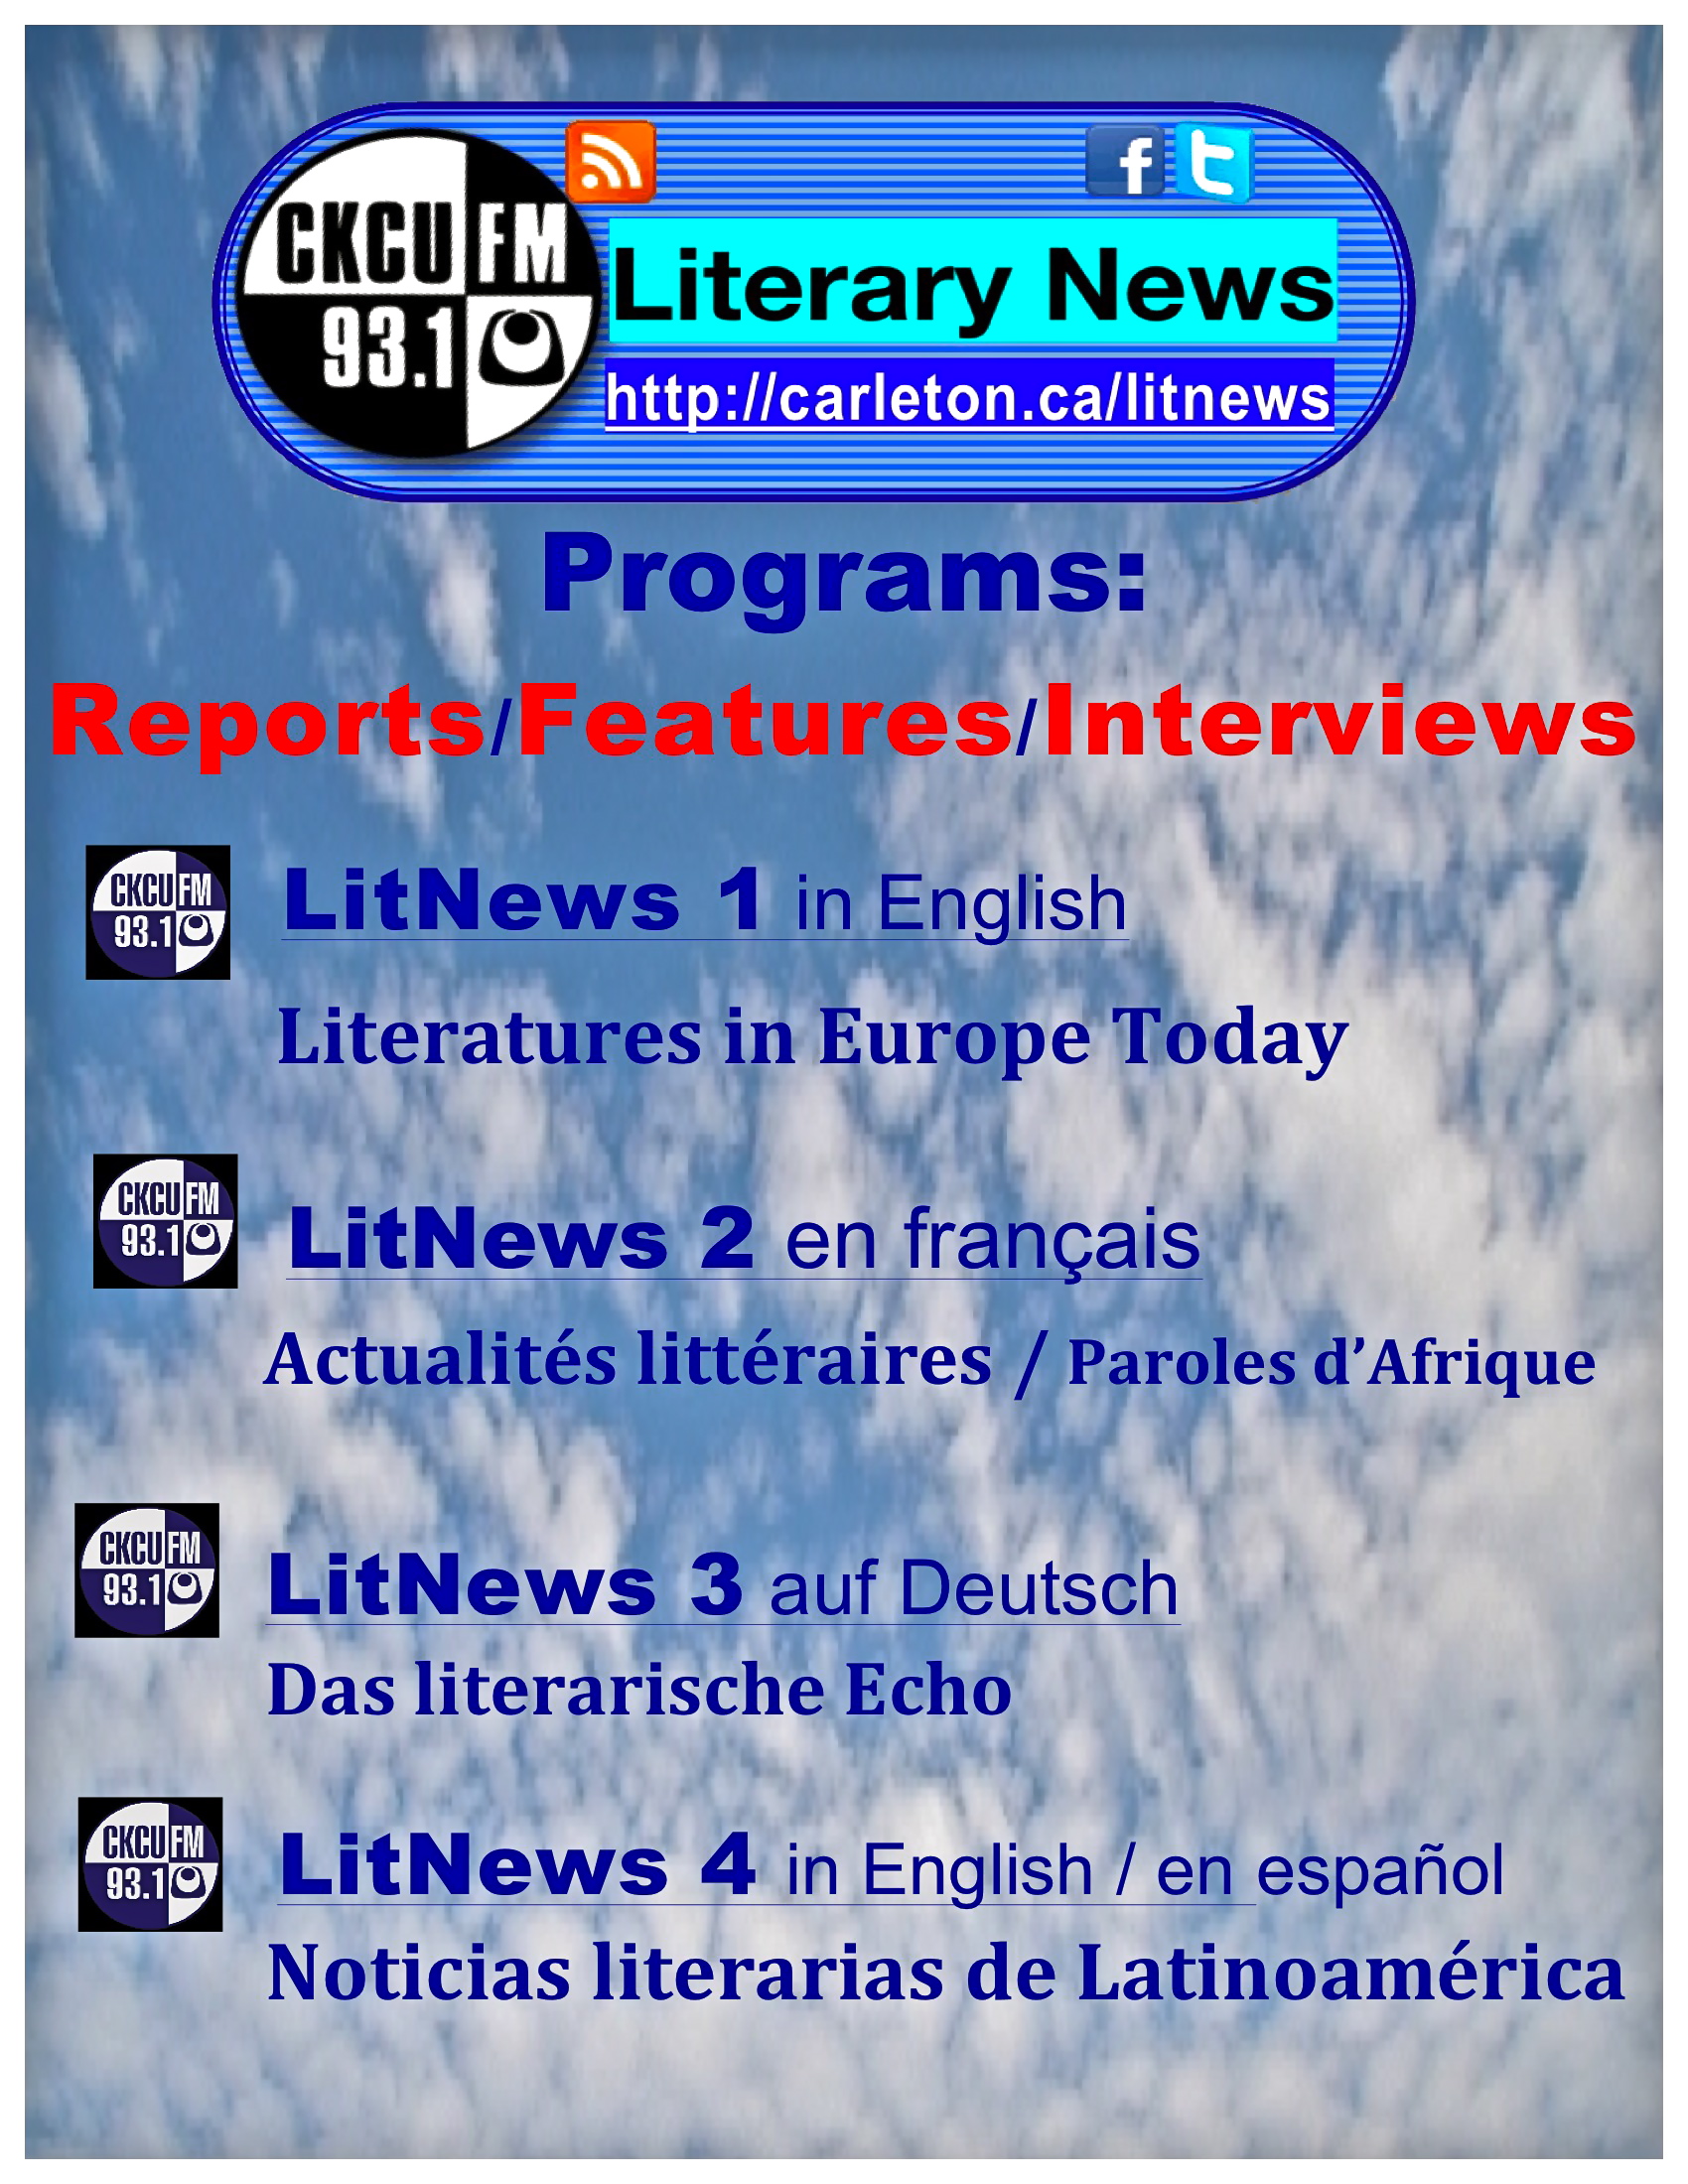 CKCU Literary News Programs